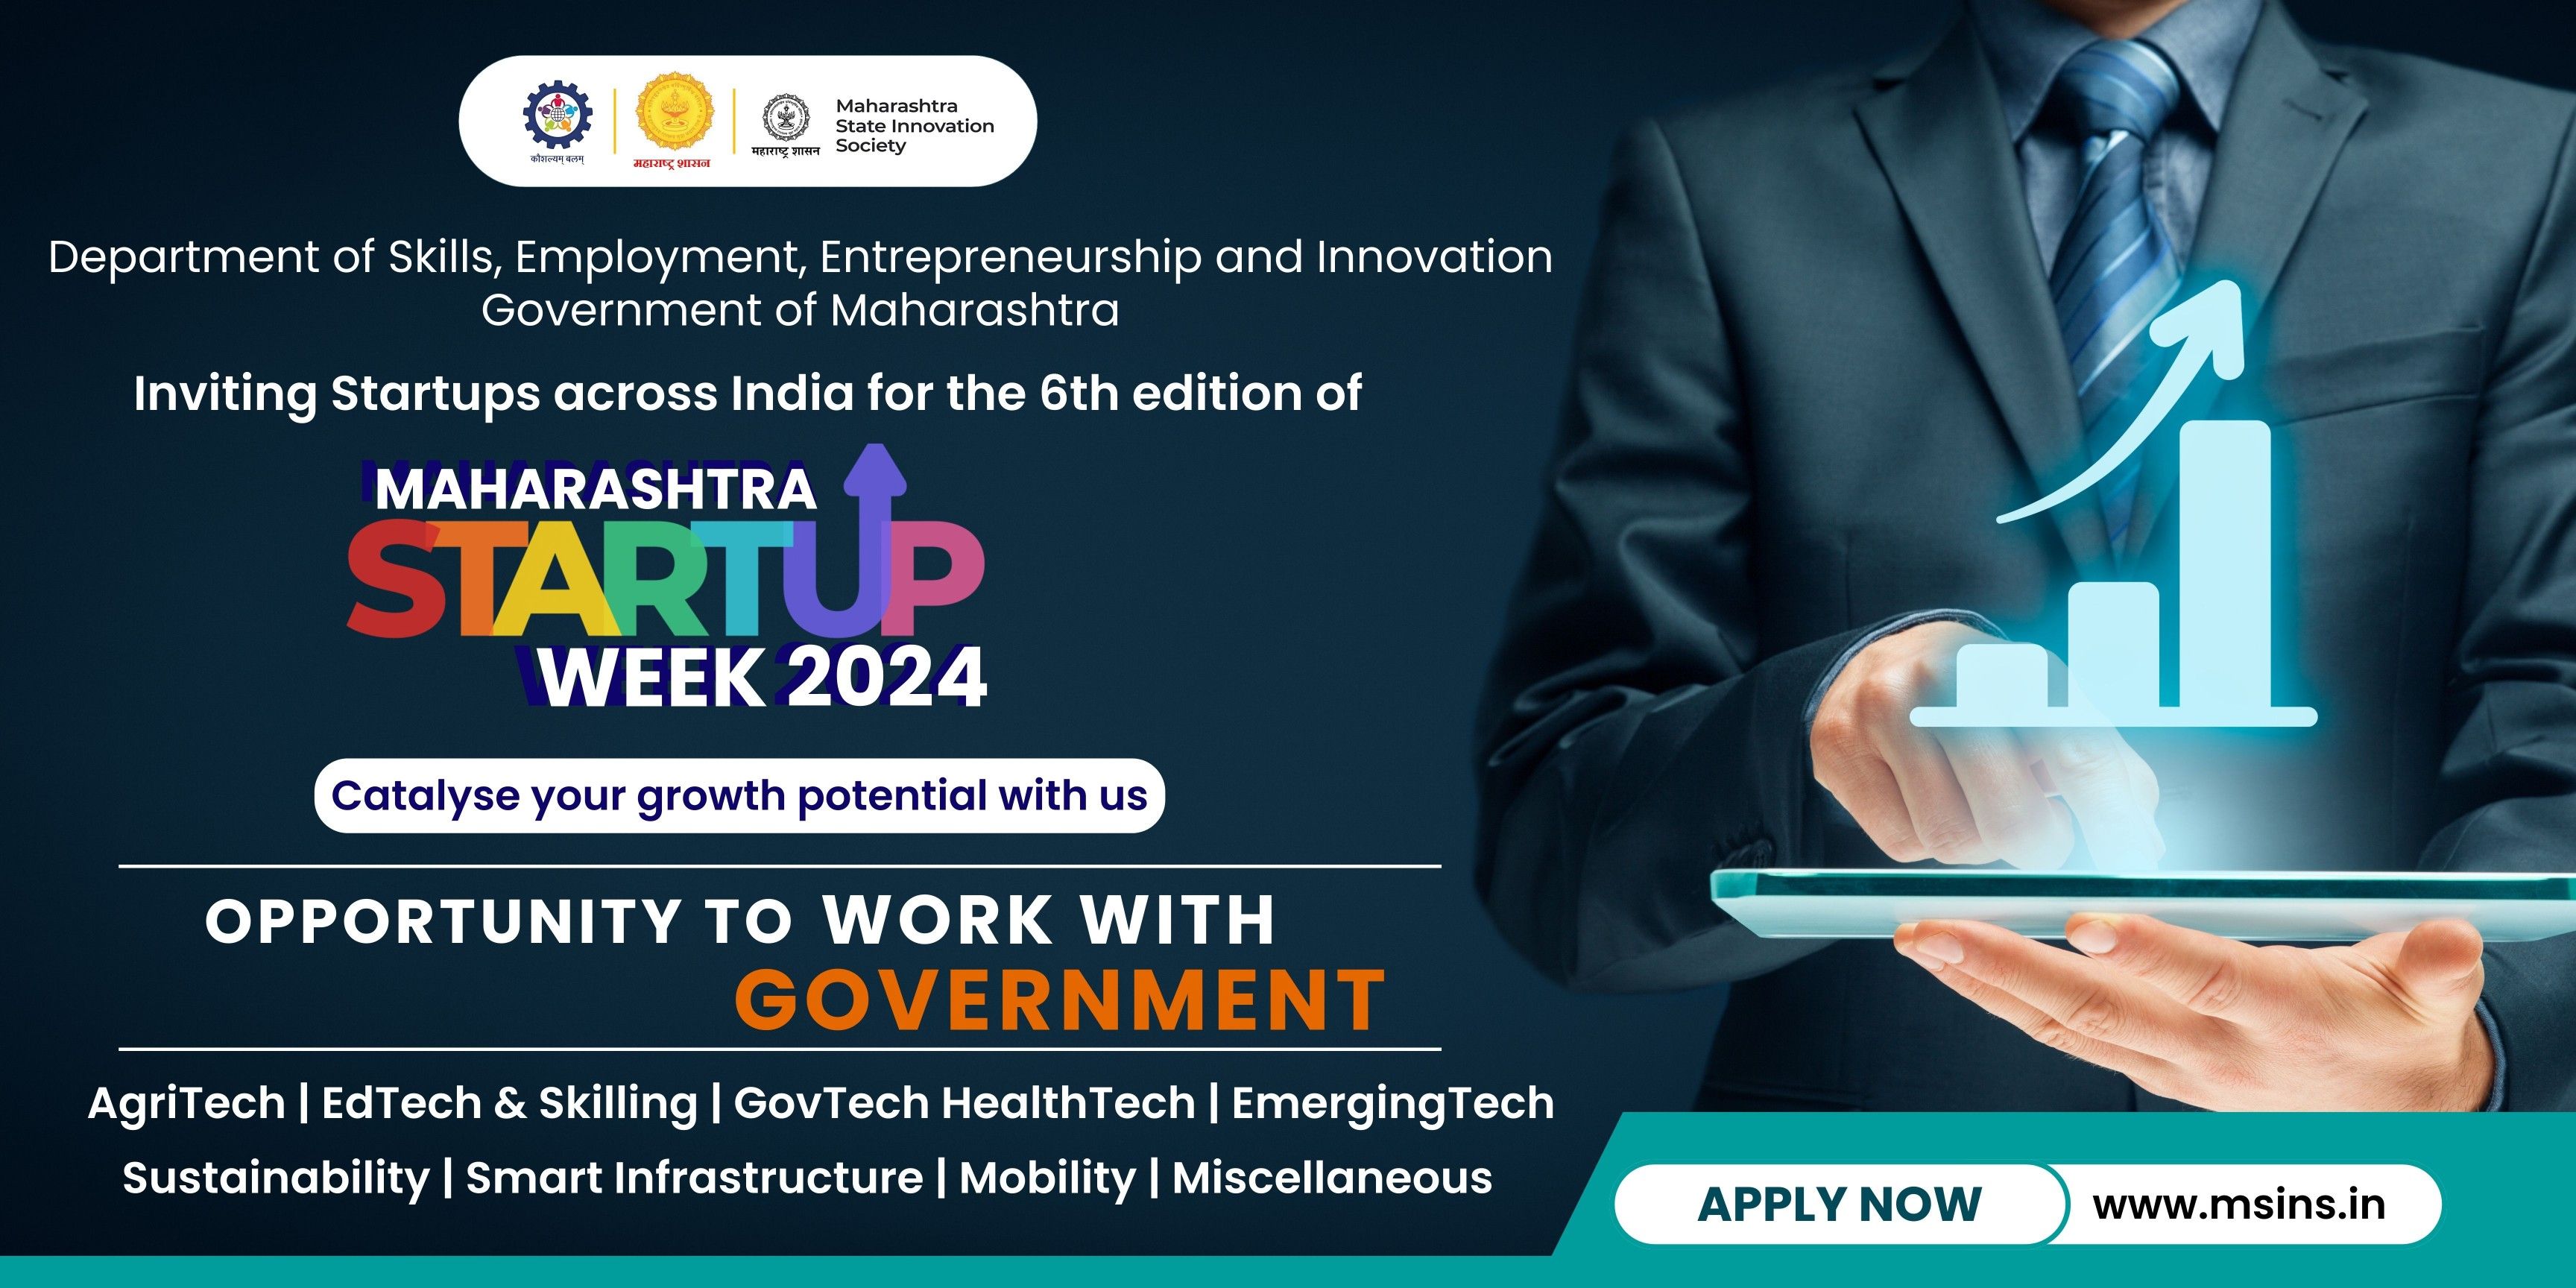 Maharashtra Startup Week 2024